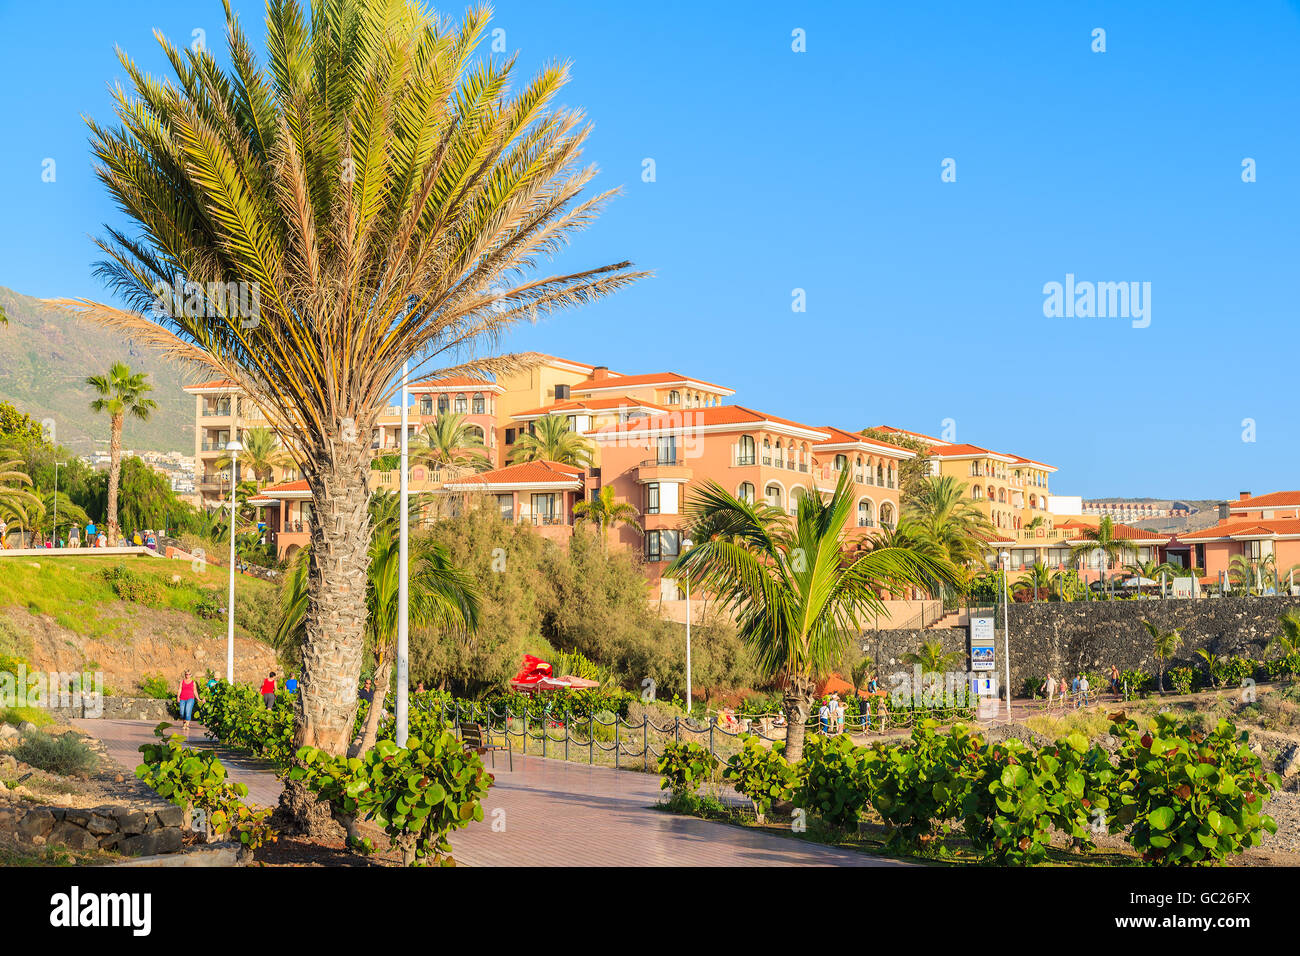 COSTA ADEJE, TENERIFE - Nov 18, 2015: passeggiata costiera in Costa Adeje città di vacanze, luogo più diffuso nel sud di Tenerife, Ca Foto Stock